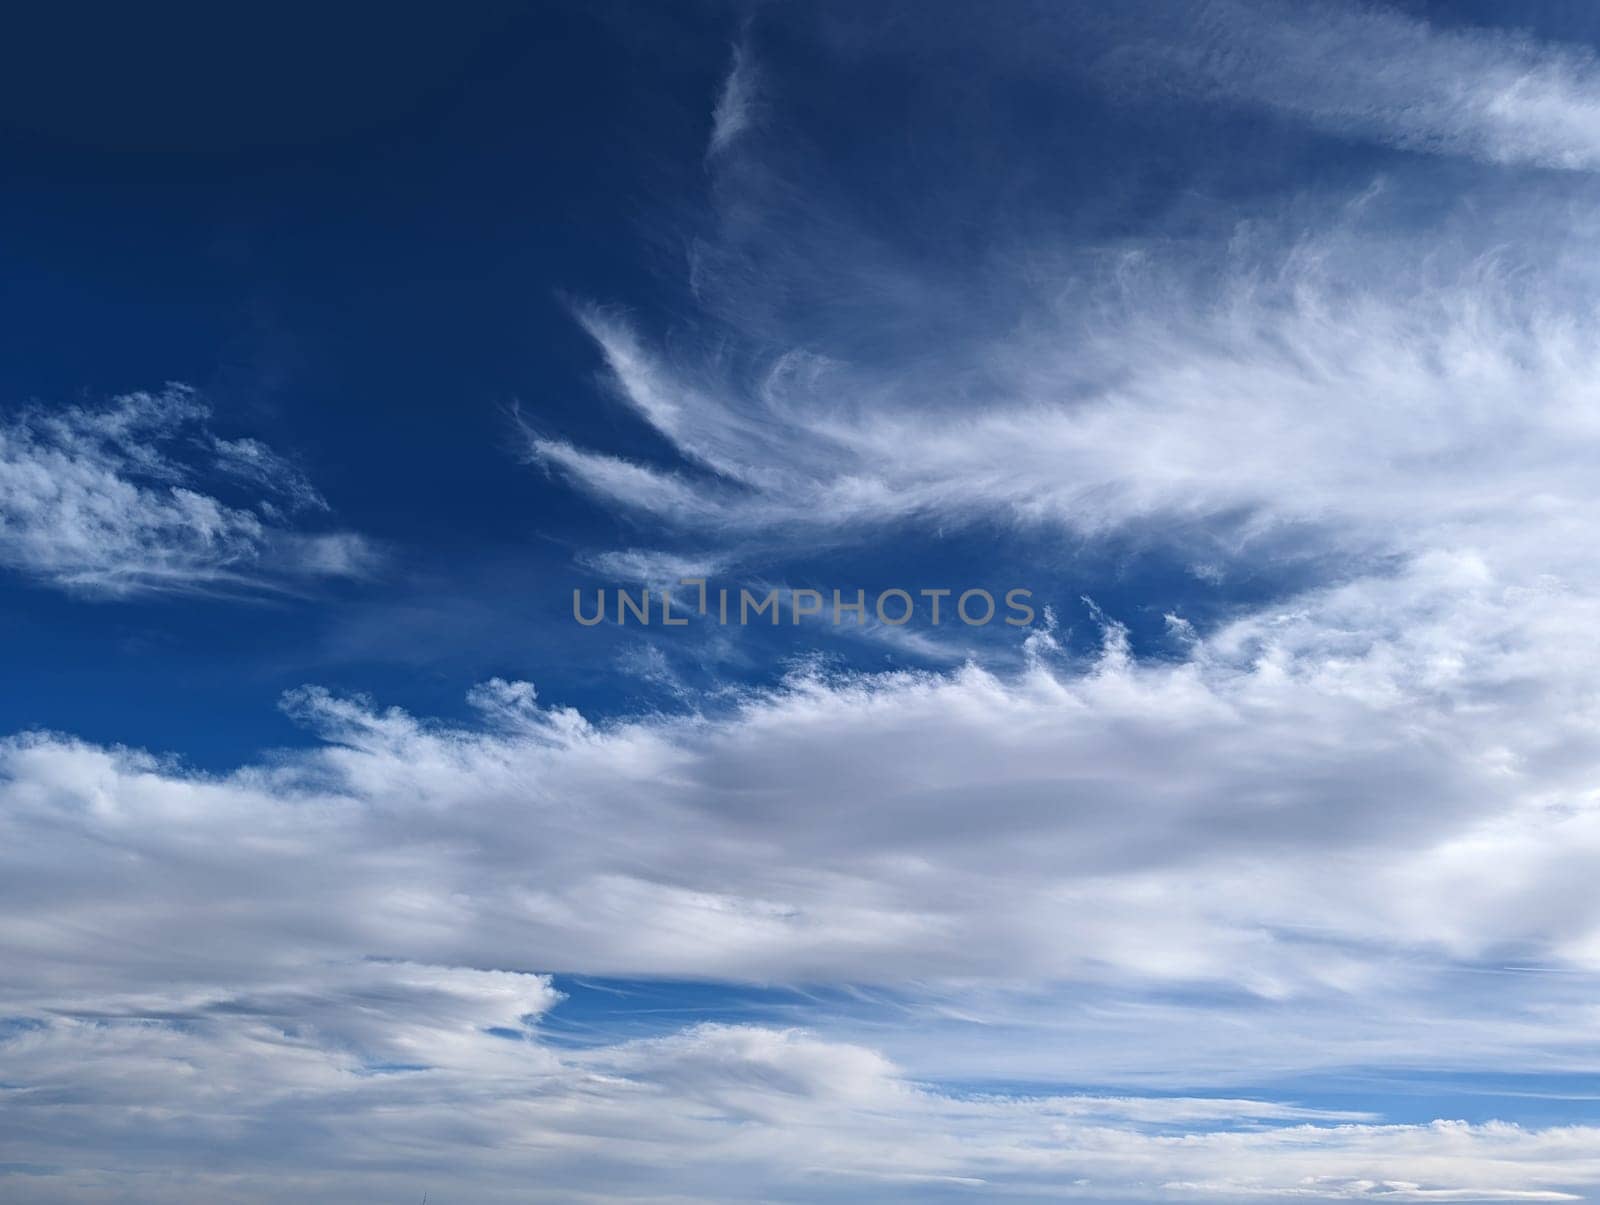 blue sky and clouds background by jackreznor